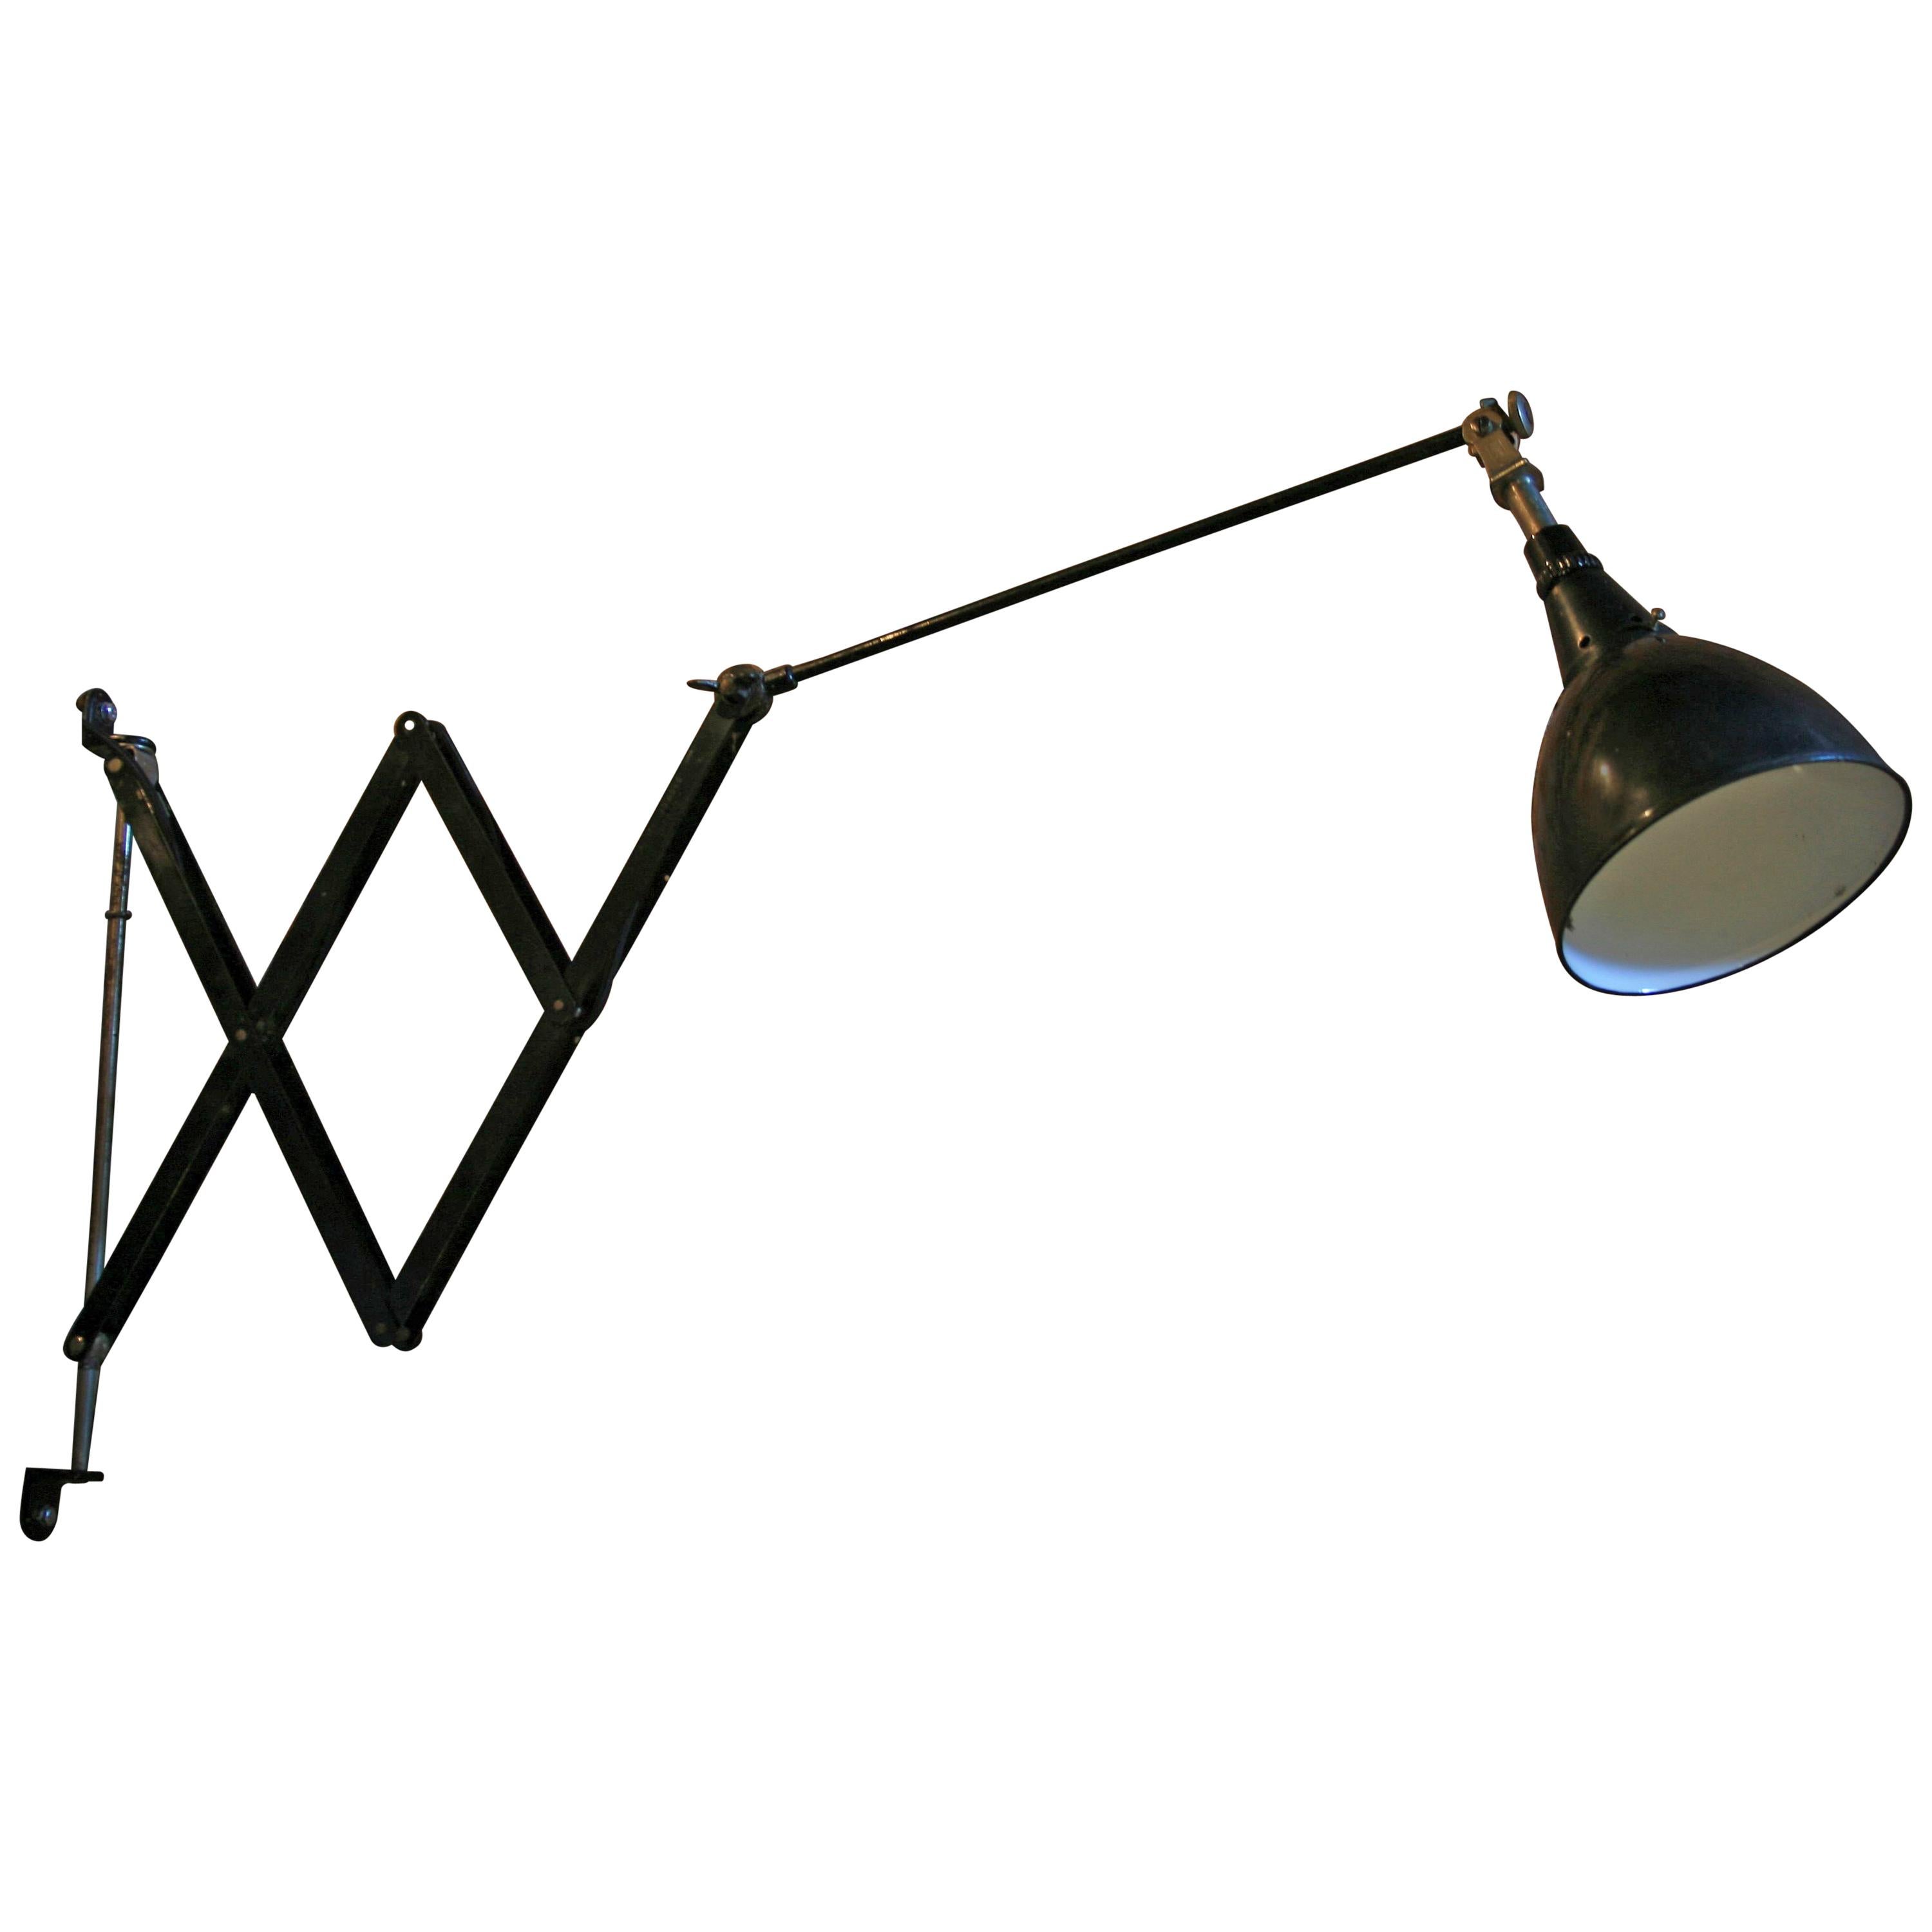 1930s Midgard Scissor Lamp, Model 110 Designed by Curt Fischer